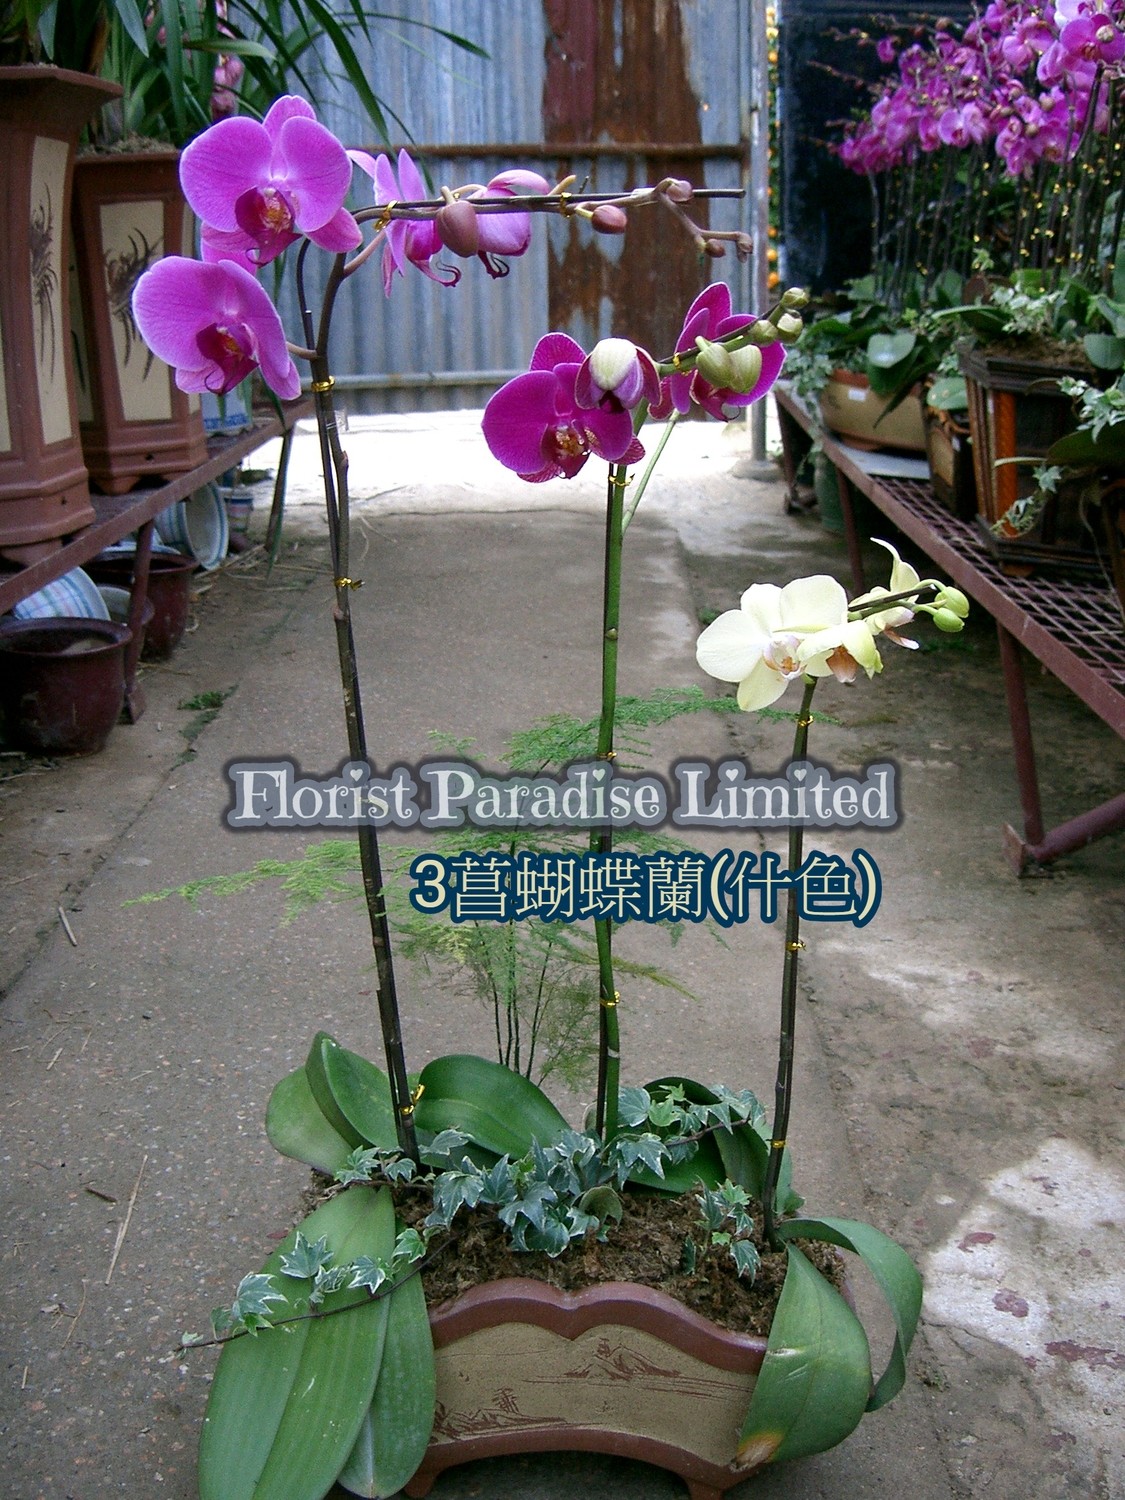 4菖蝴蝶蘭(紫)花場